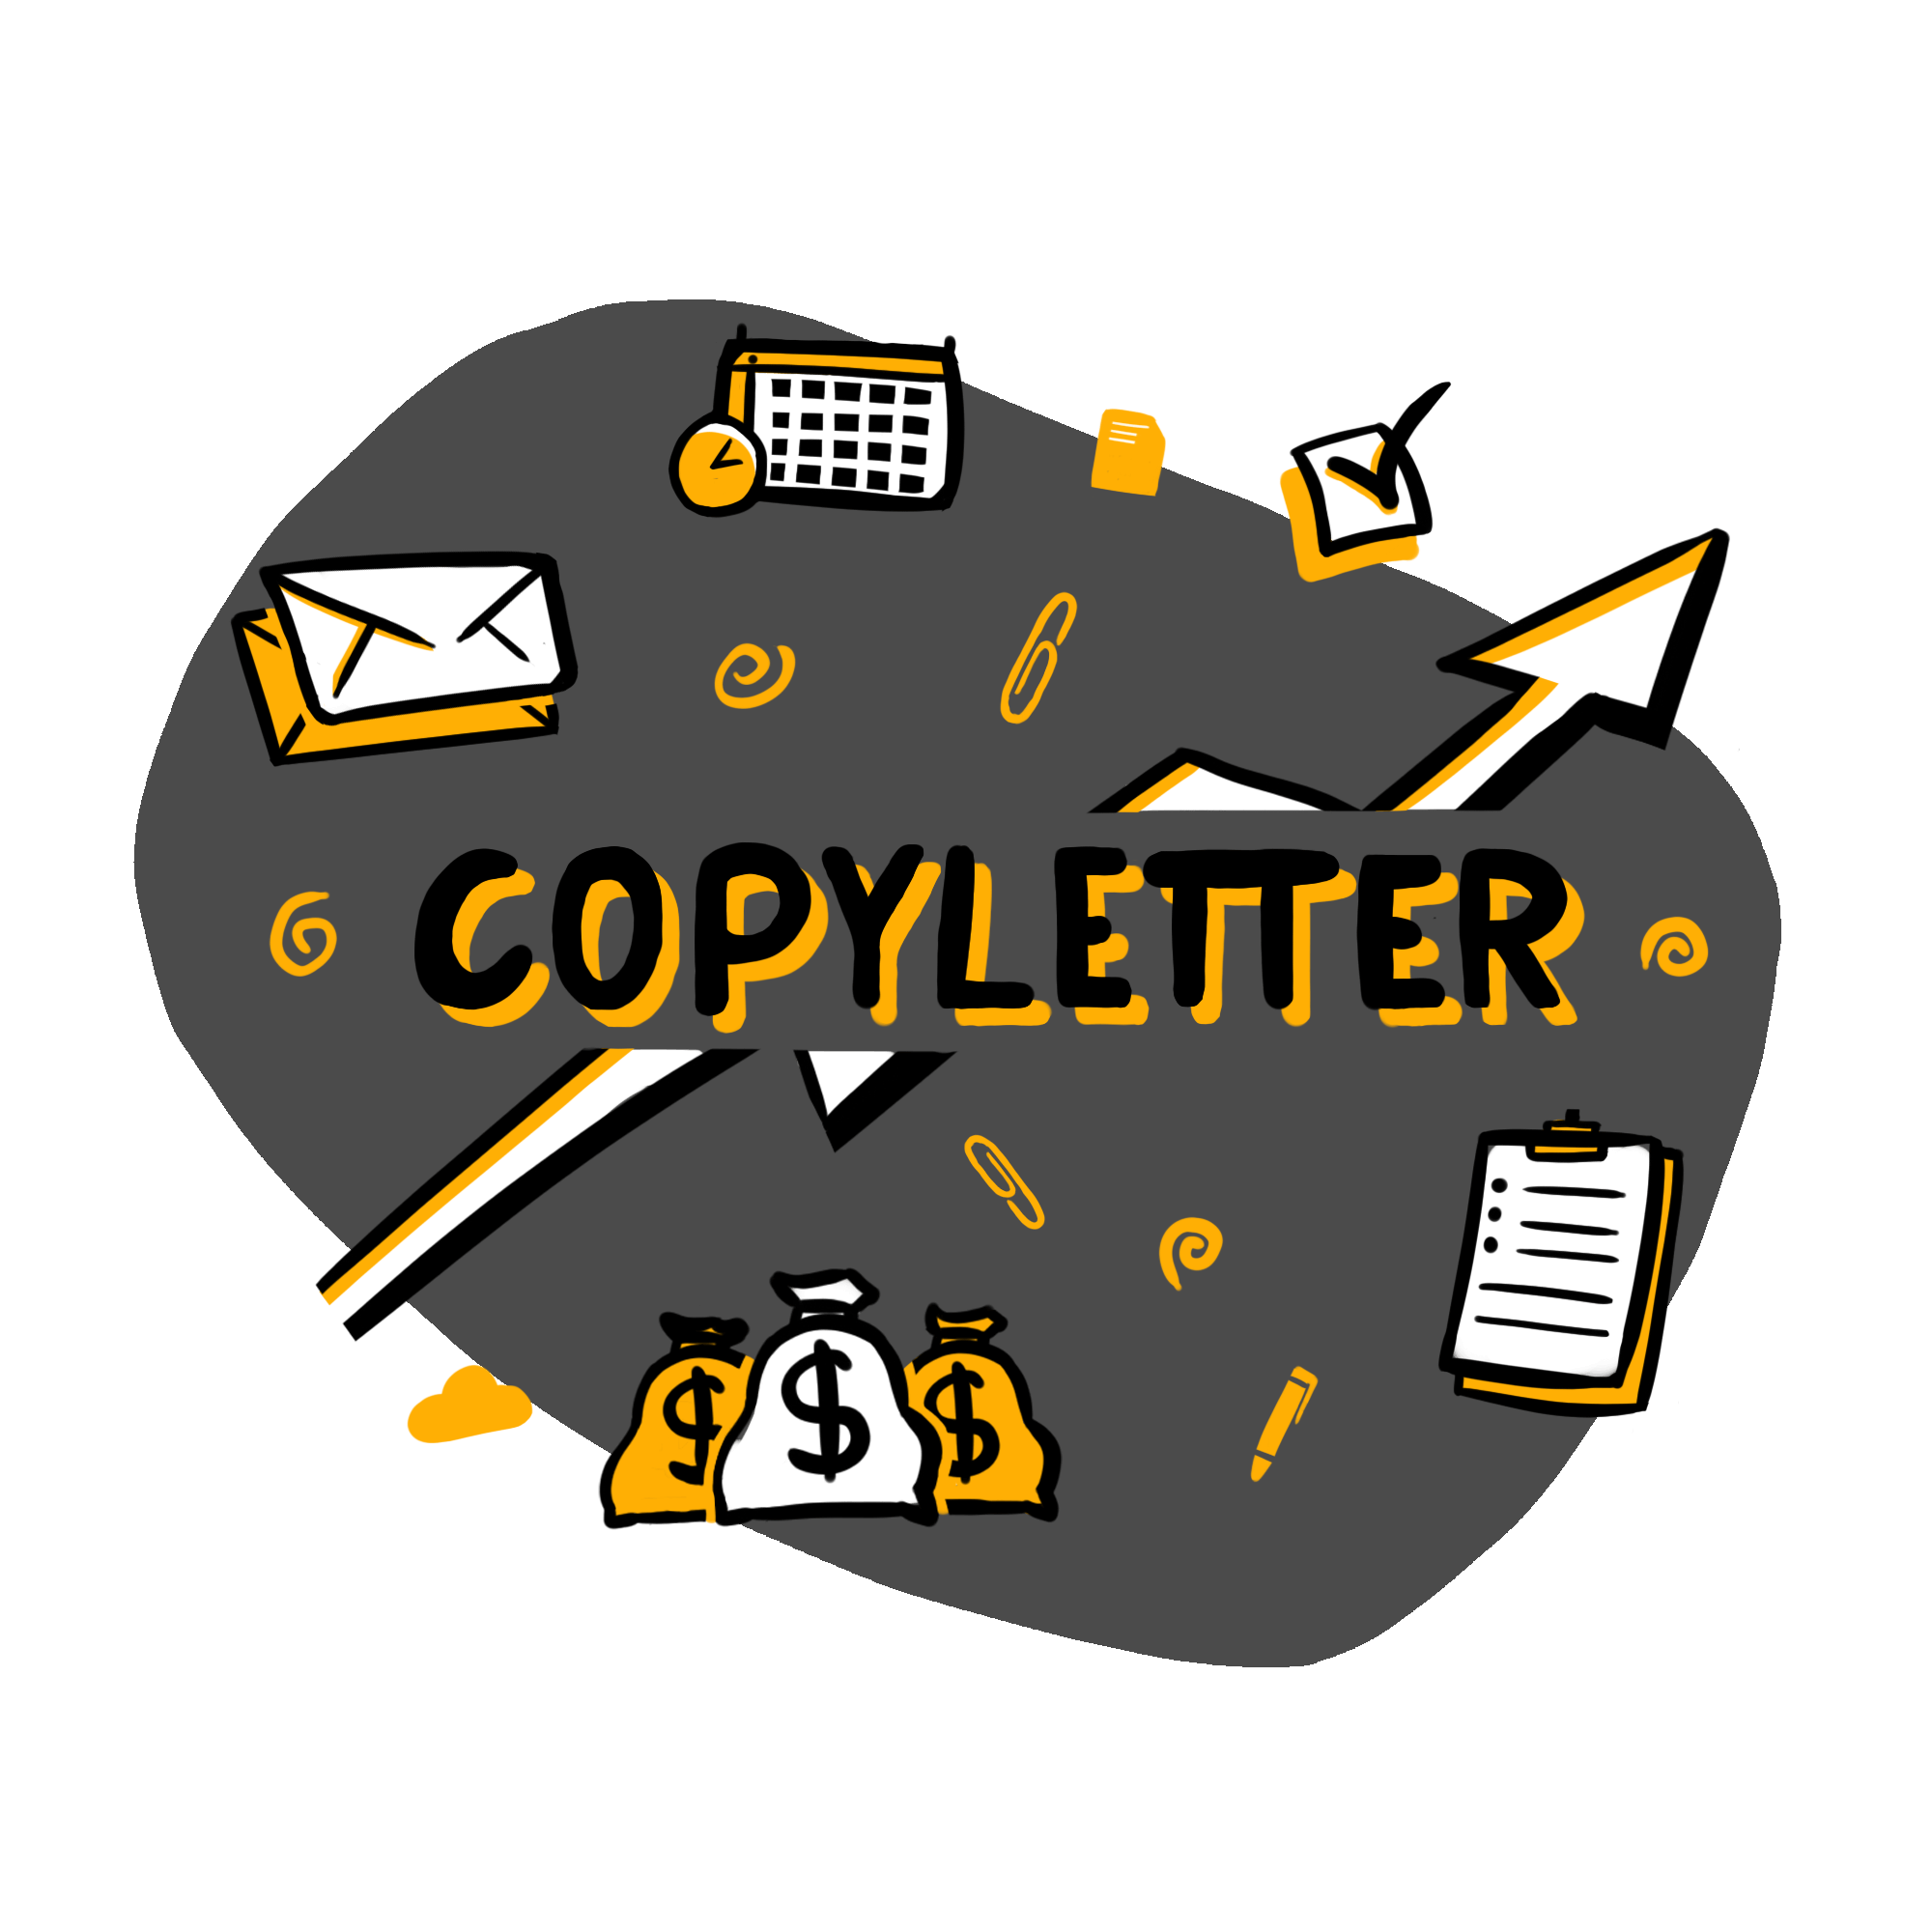 Copyletter - Praktyczne Wskazówki, Dzięki Którym Zaczniesz Tworzyć Świetne Teksty